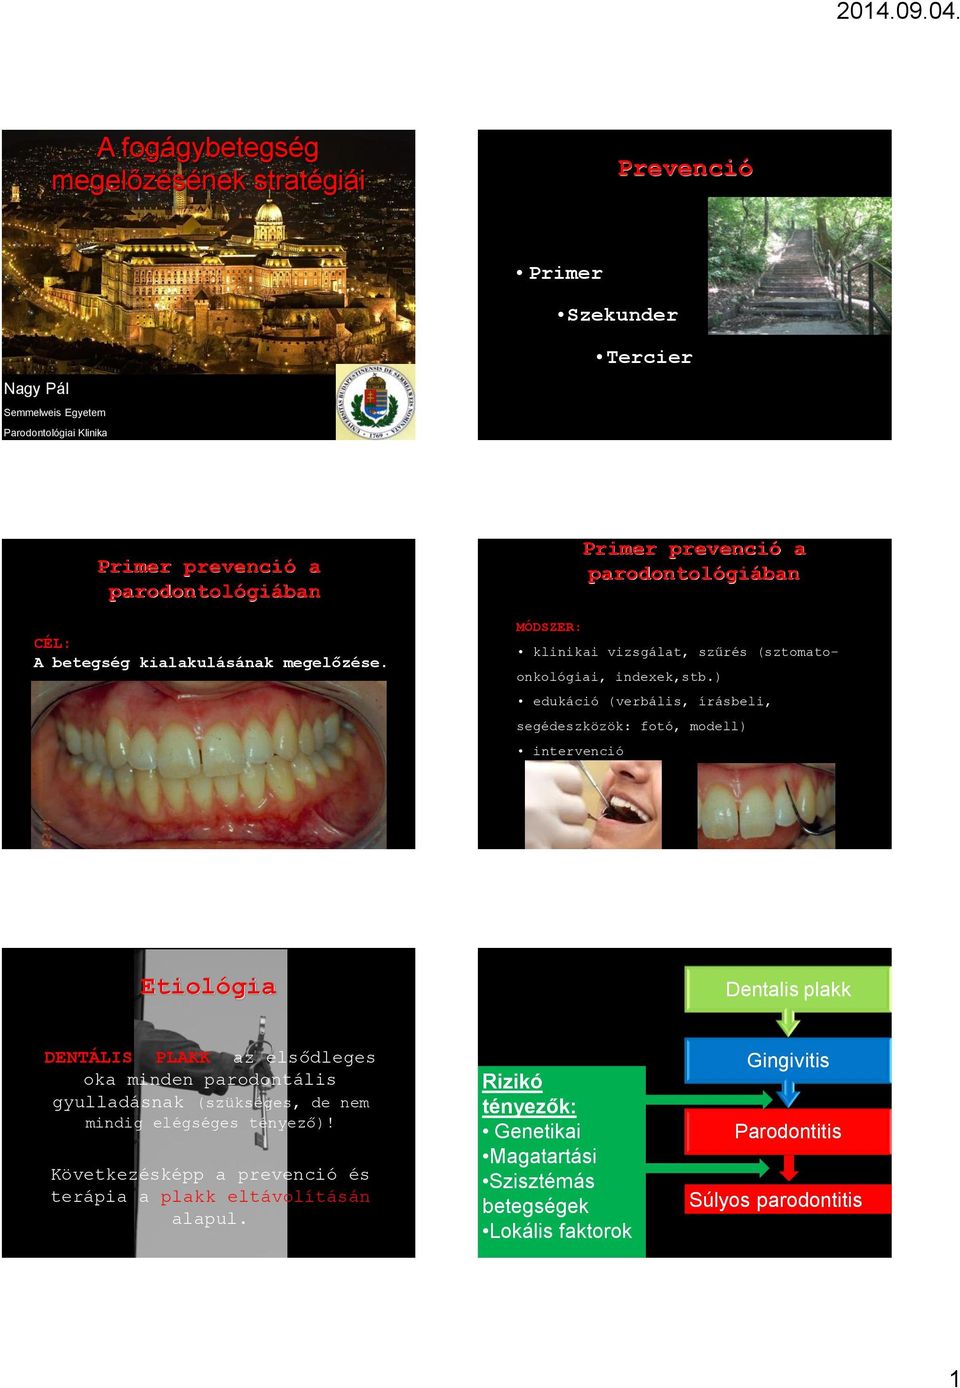 ) edukáció (verbális, írásbeli, segédeszközök: fotó, modell) intervenció Etiológia Dentalis plakk DENTÁLIS PLAKK az elsődleges oka minden parodontális